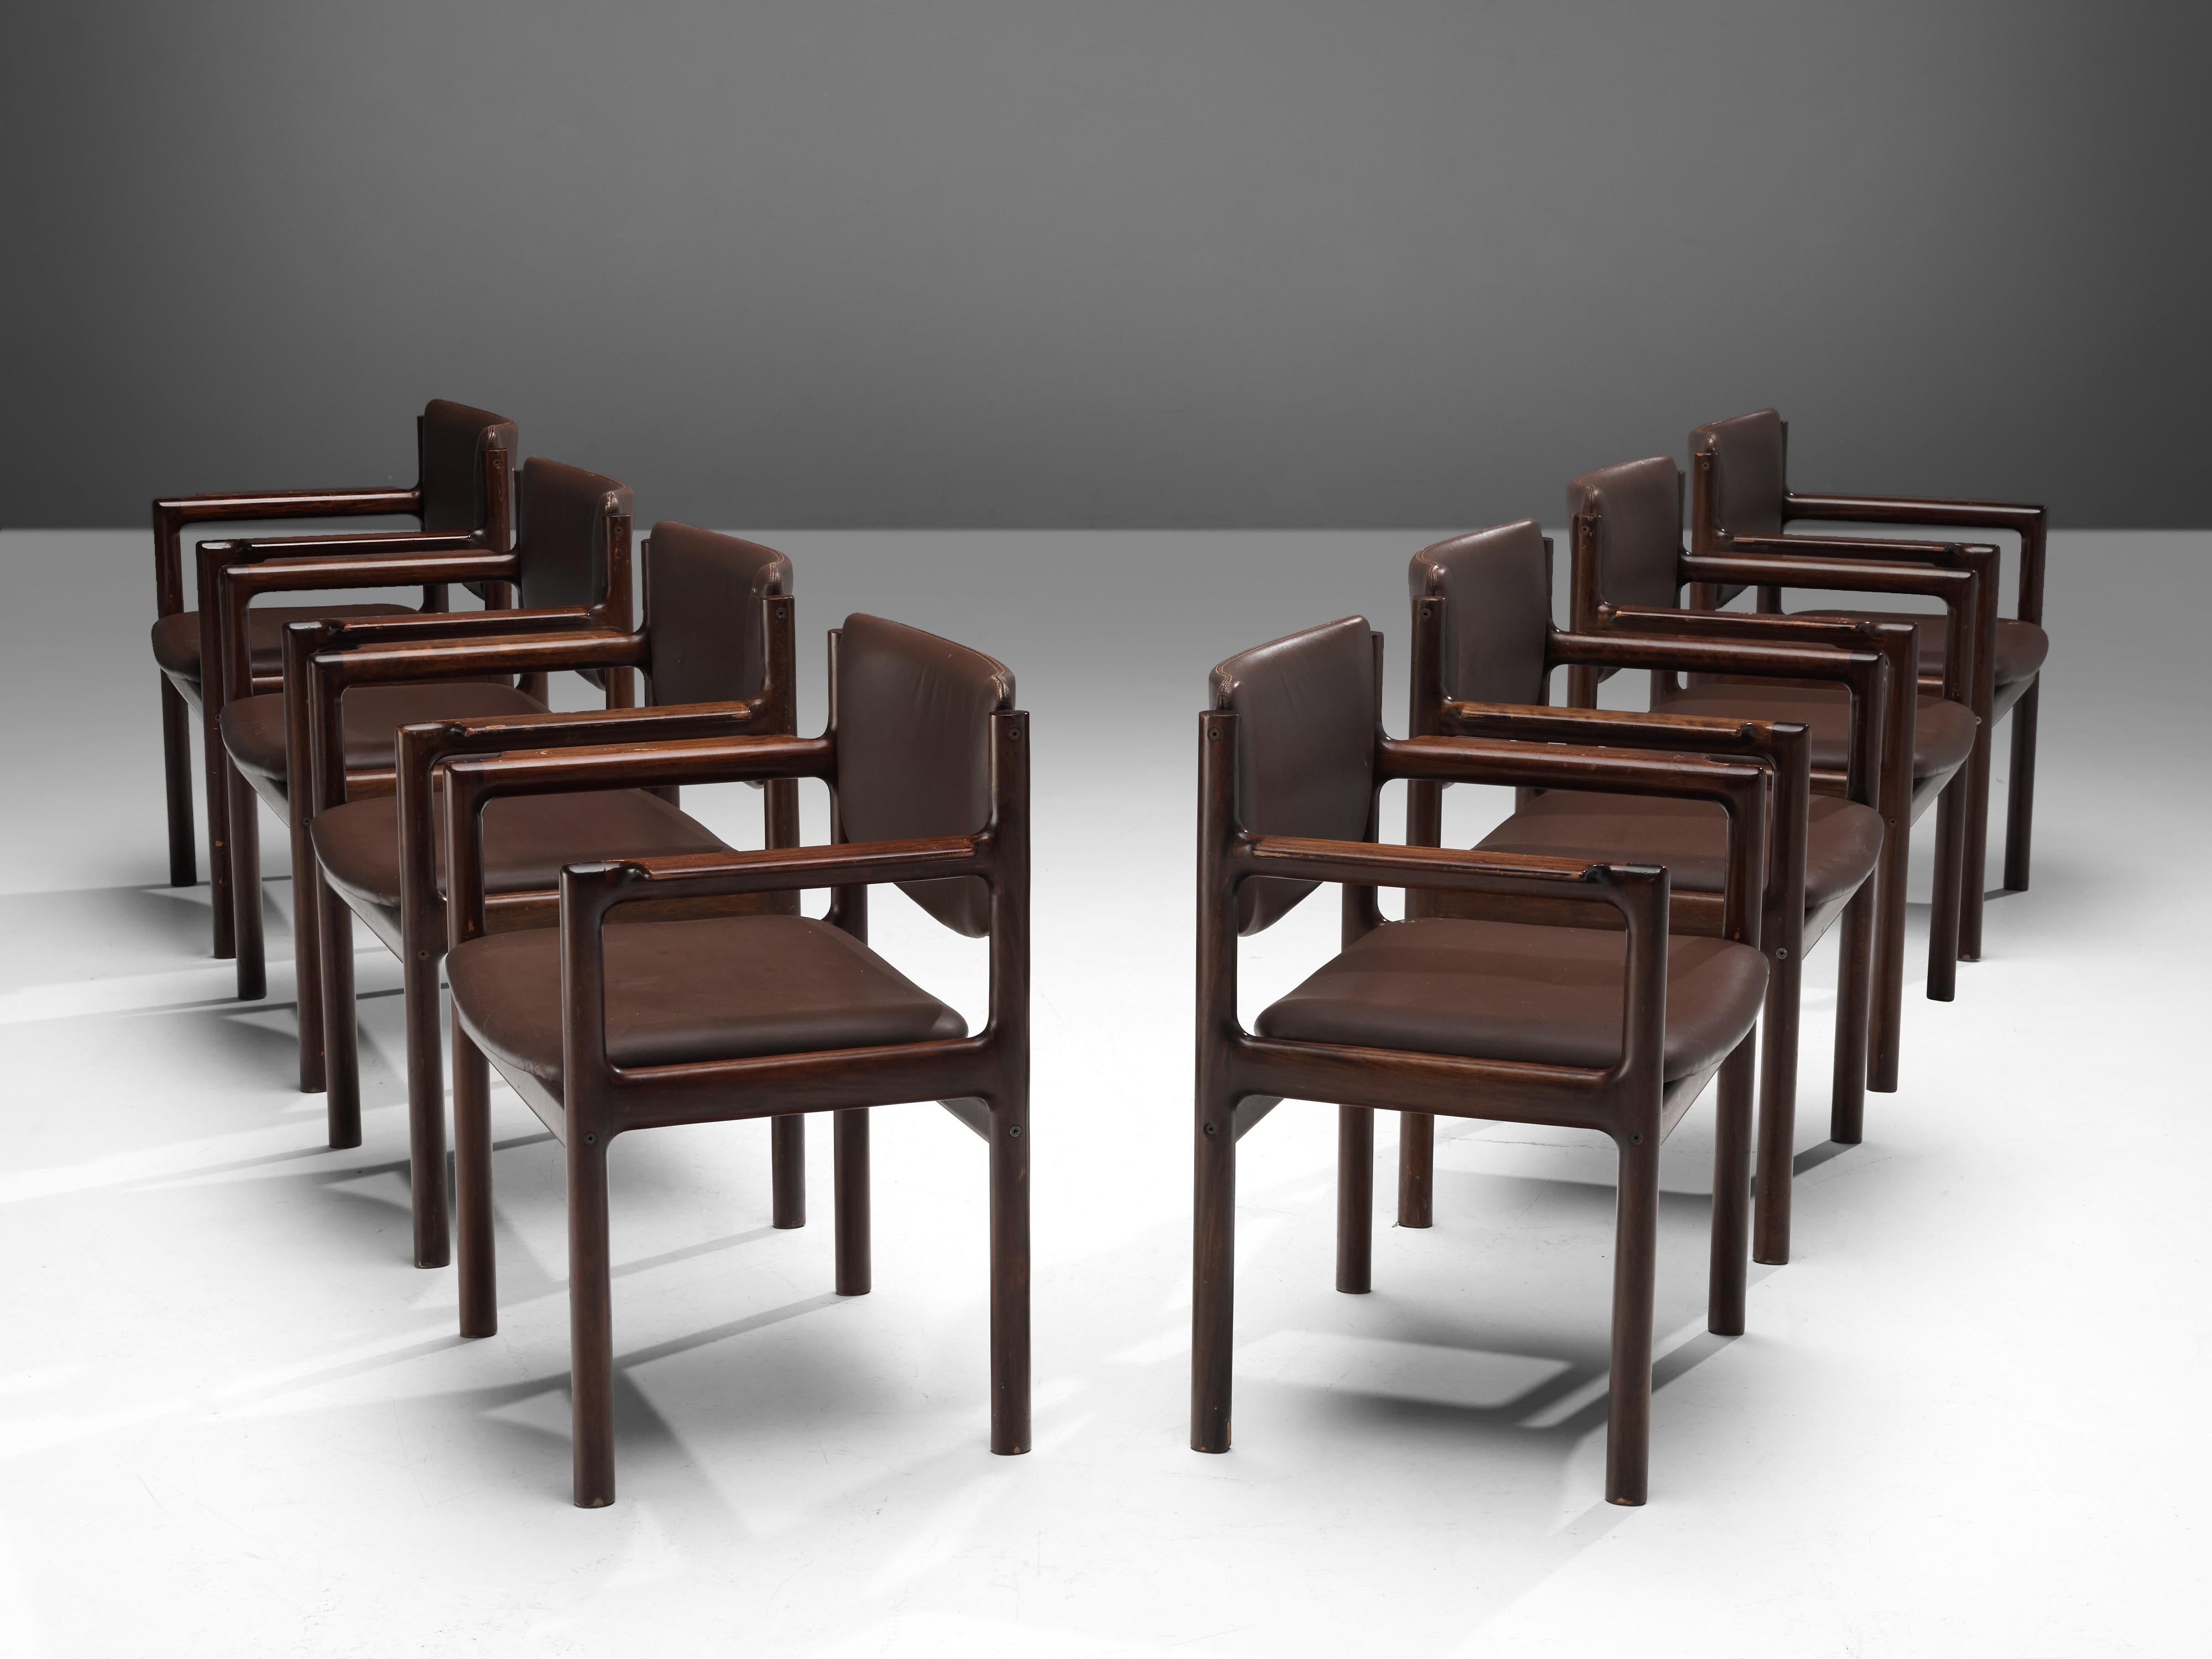 Satz von acht Sesseln, gebeiztes Mahagoni, Kunstleder, Dänemark, 1960er Jahre.

Das Modell dieser Stühle ist kantig und bescheiden, da es hauptsächlich aus horizontalen und vertikalen Linien aufgebaut ist. Die klaren, kantigen Formen verleihen